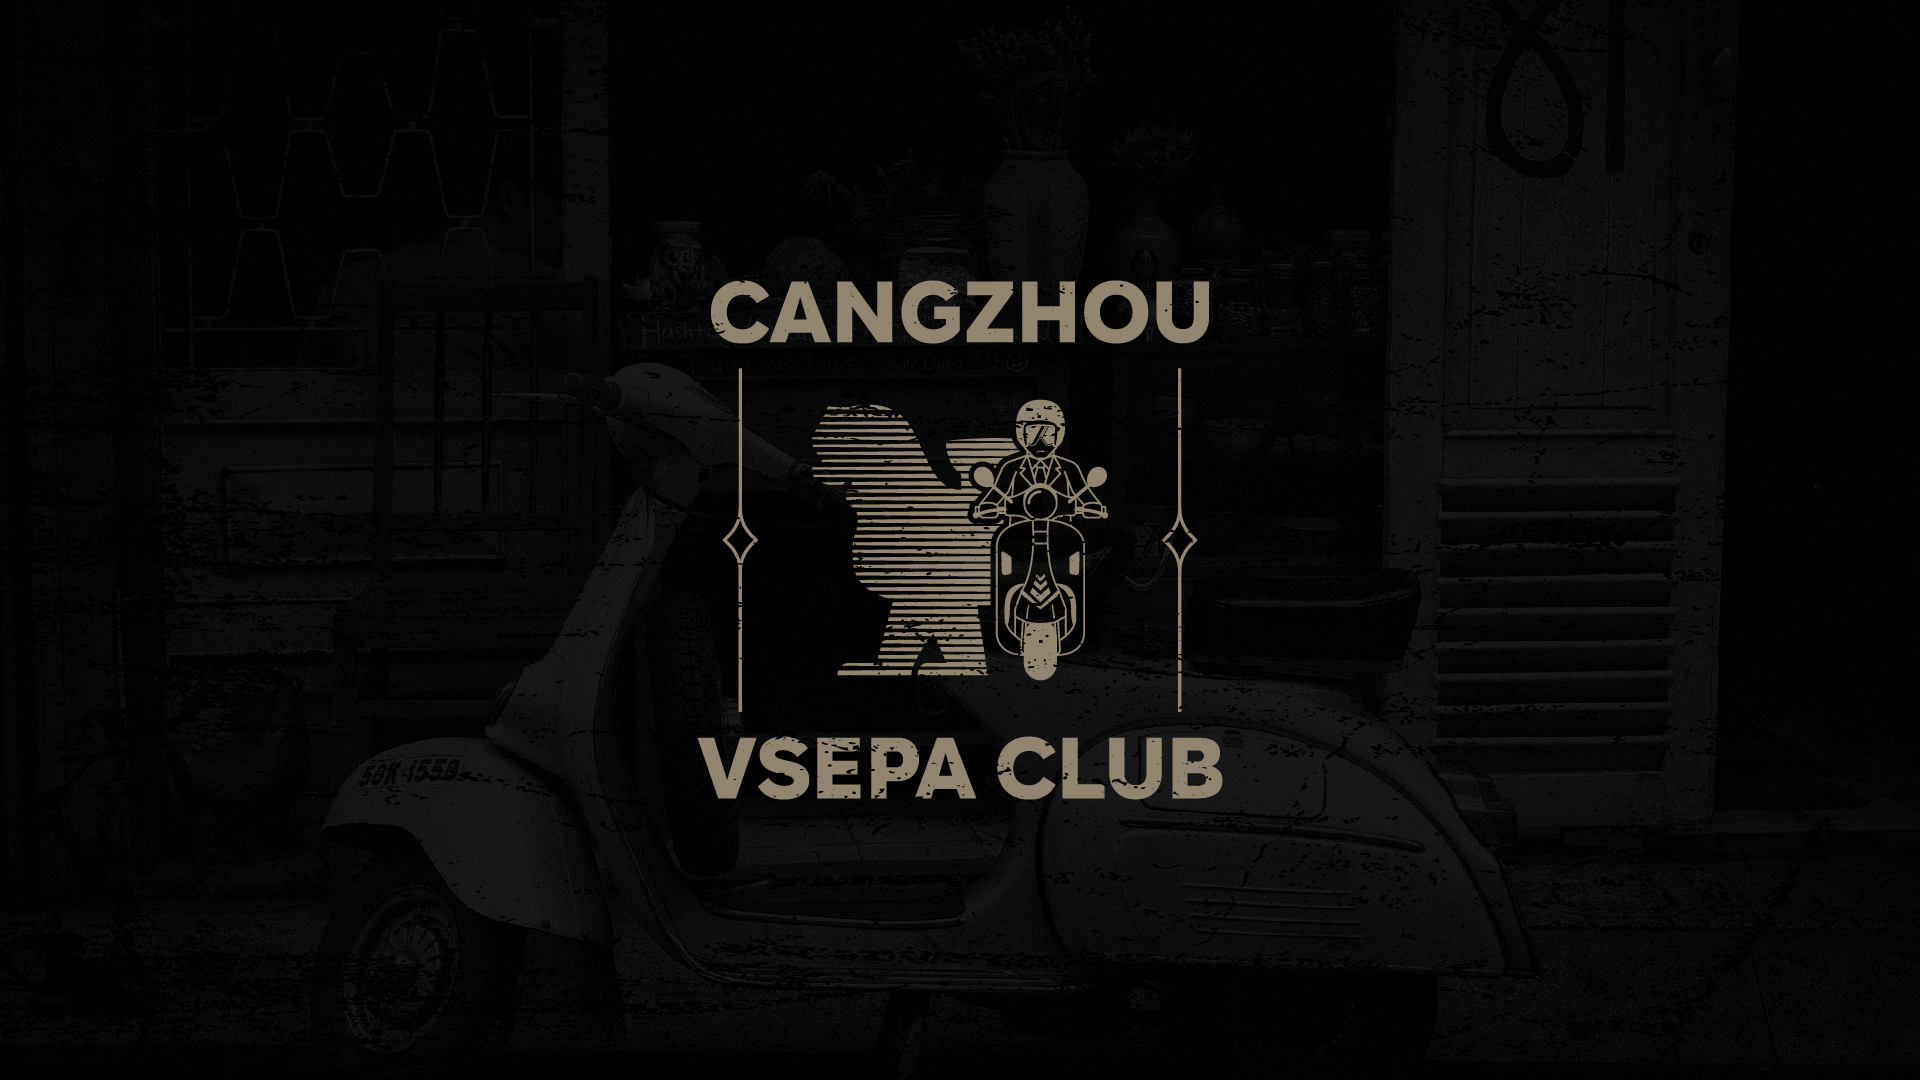 沧州Vespa摩托车俱乐部品牌形象LOGO设计 黑色复古风格